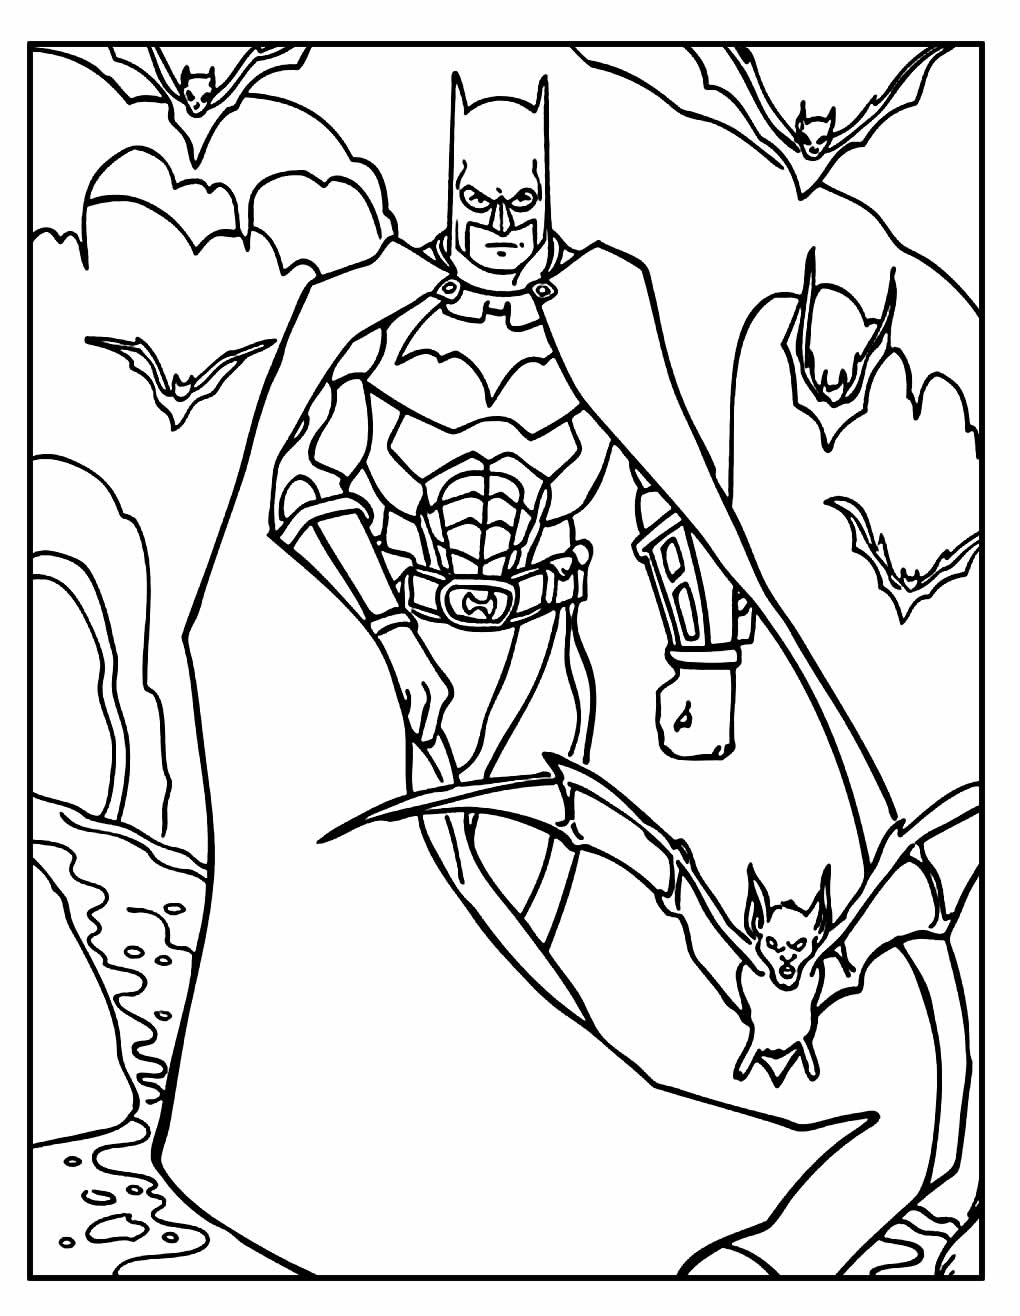 Desenho para colorir do Batman